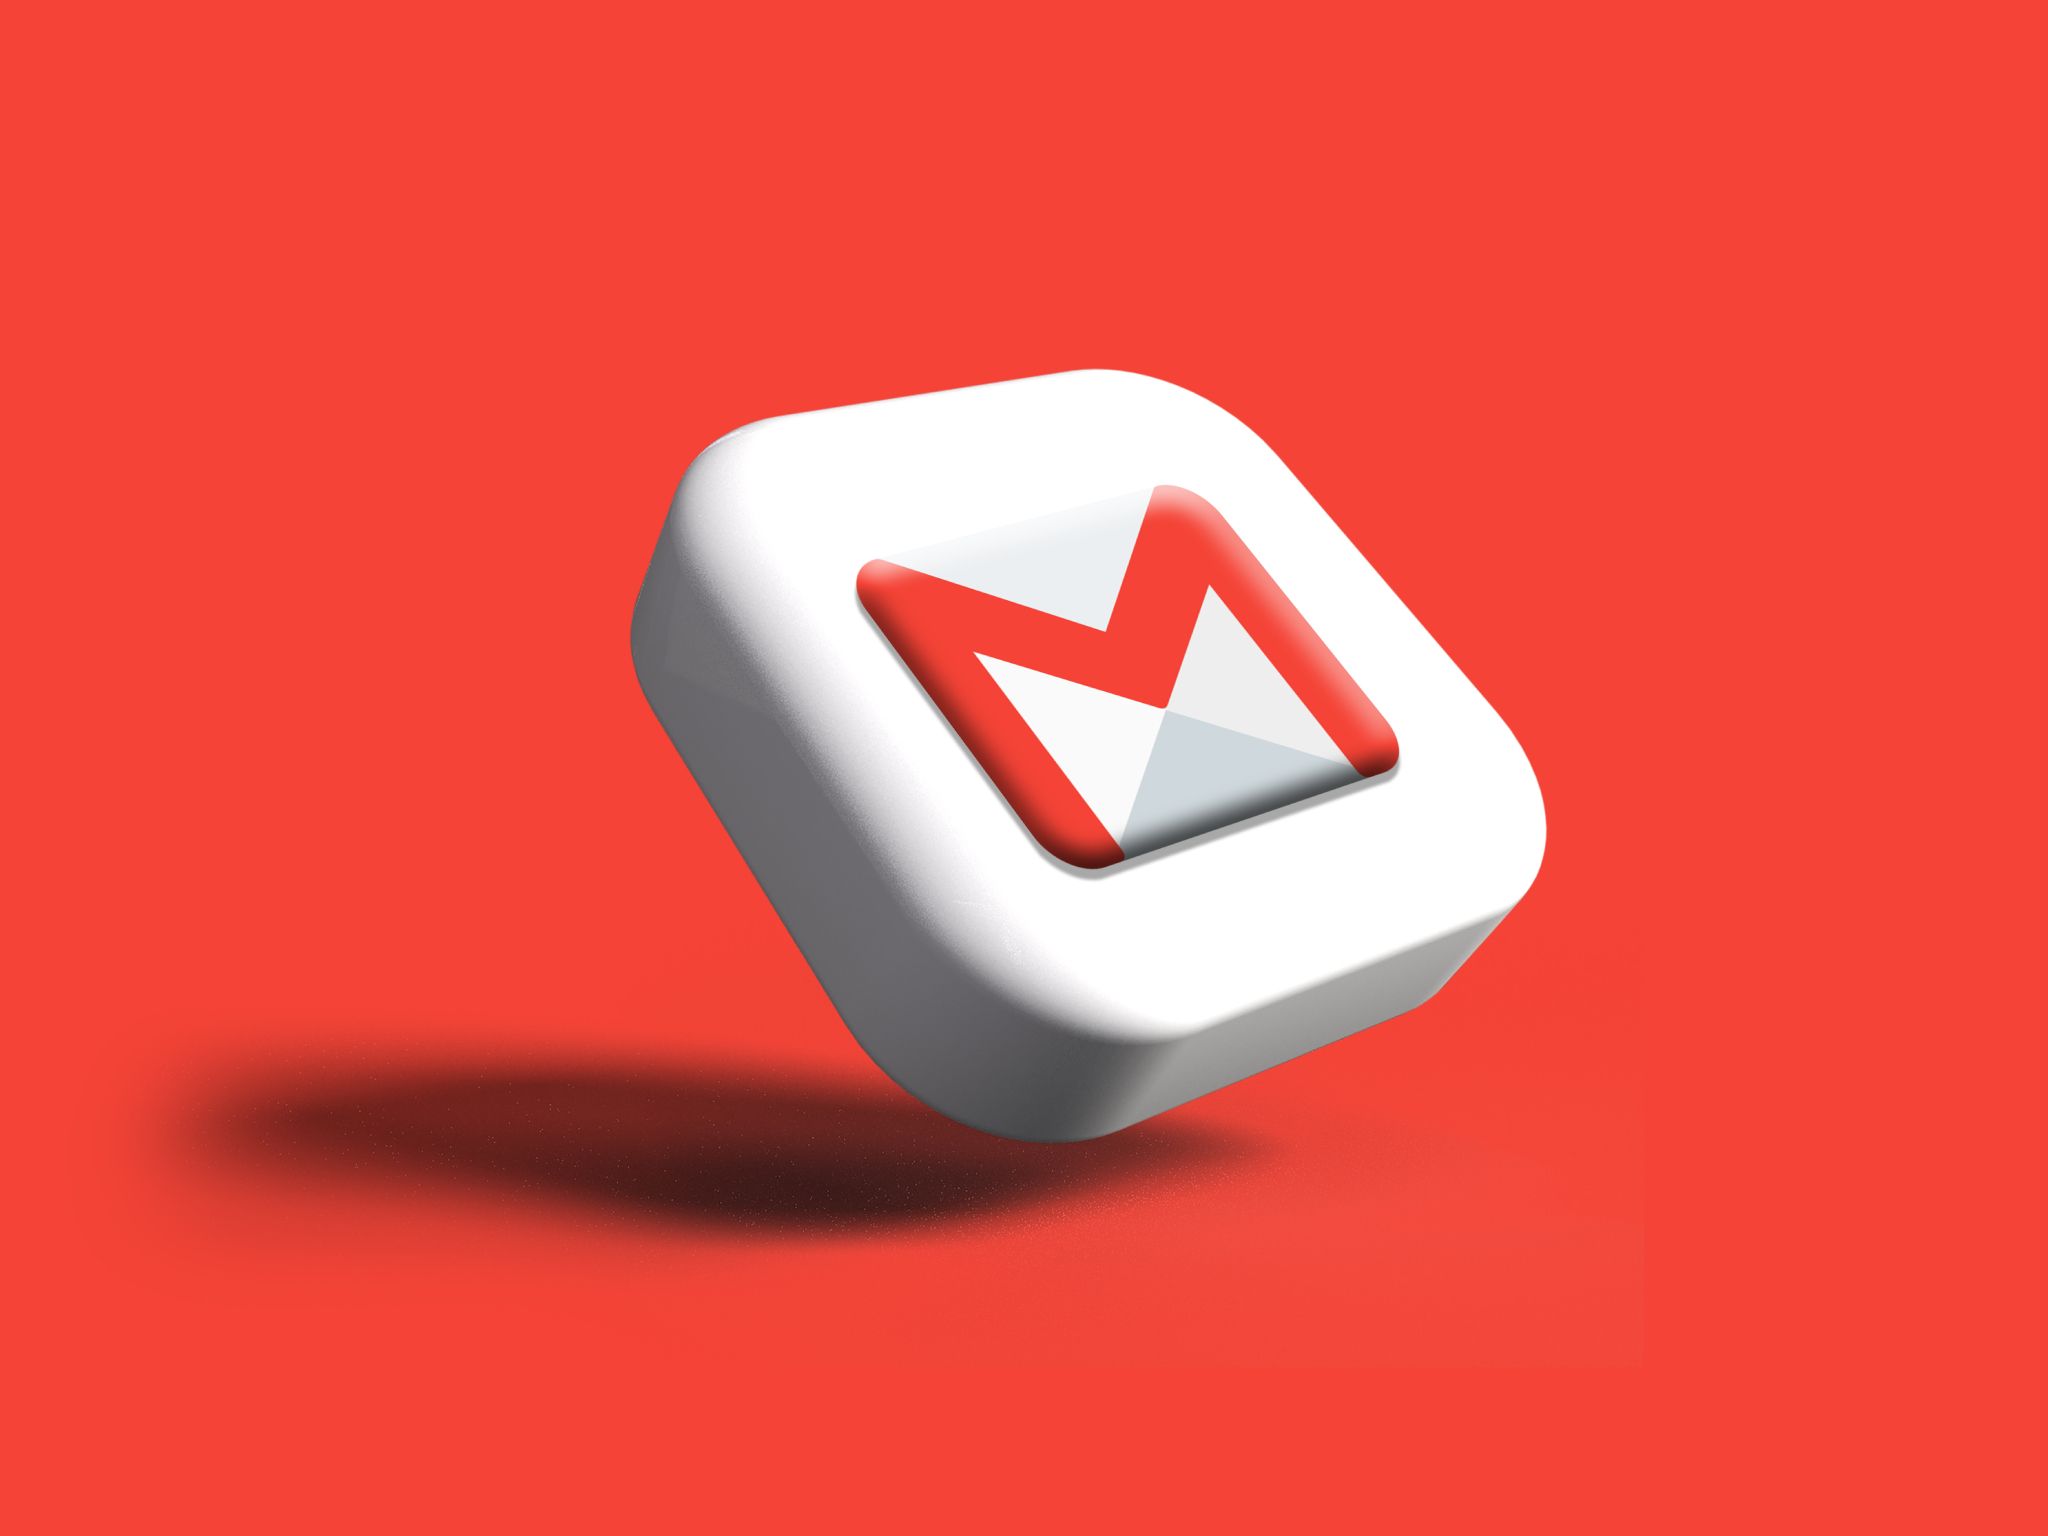 Logotipo do Gmail contra um fundo vermelho